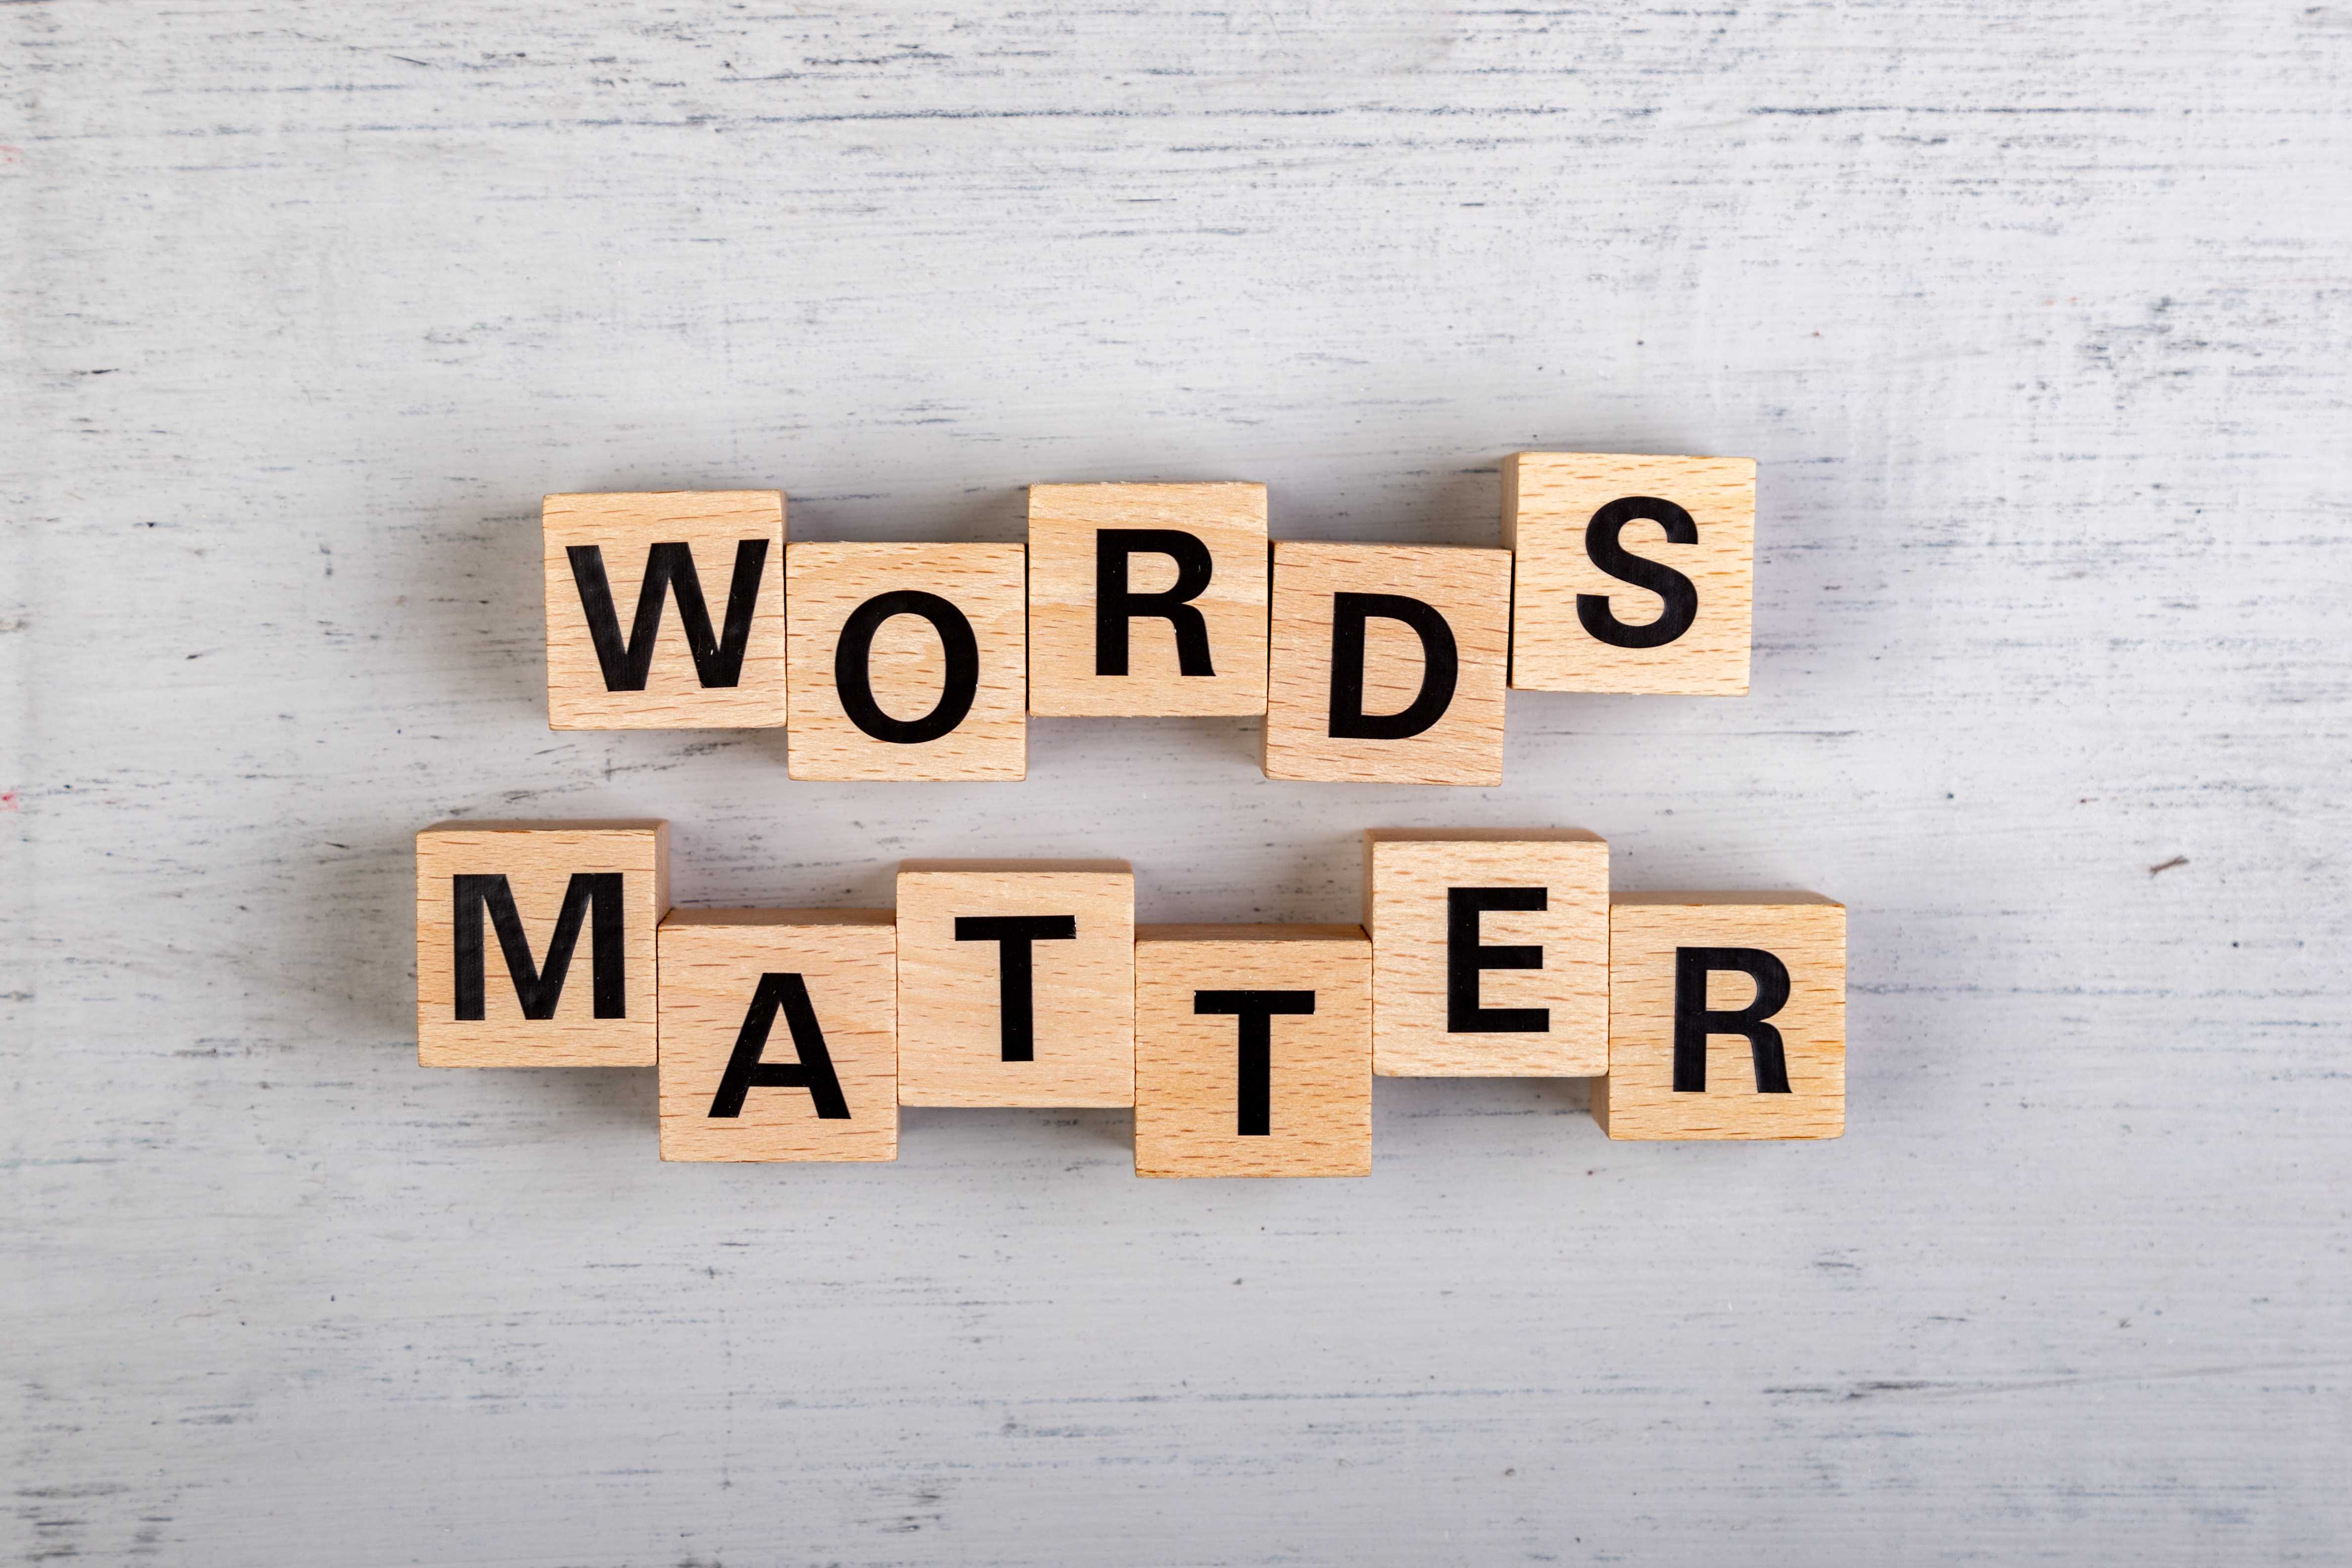 words matter